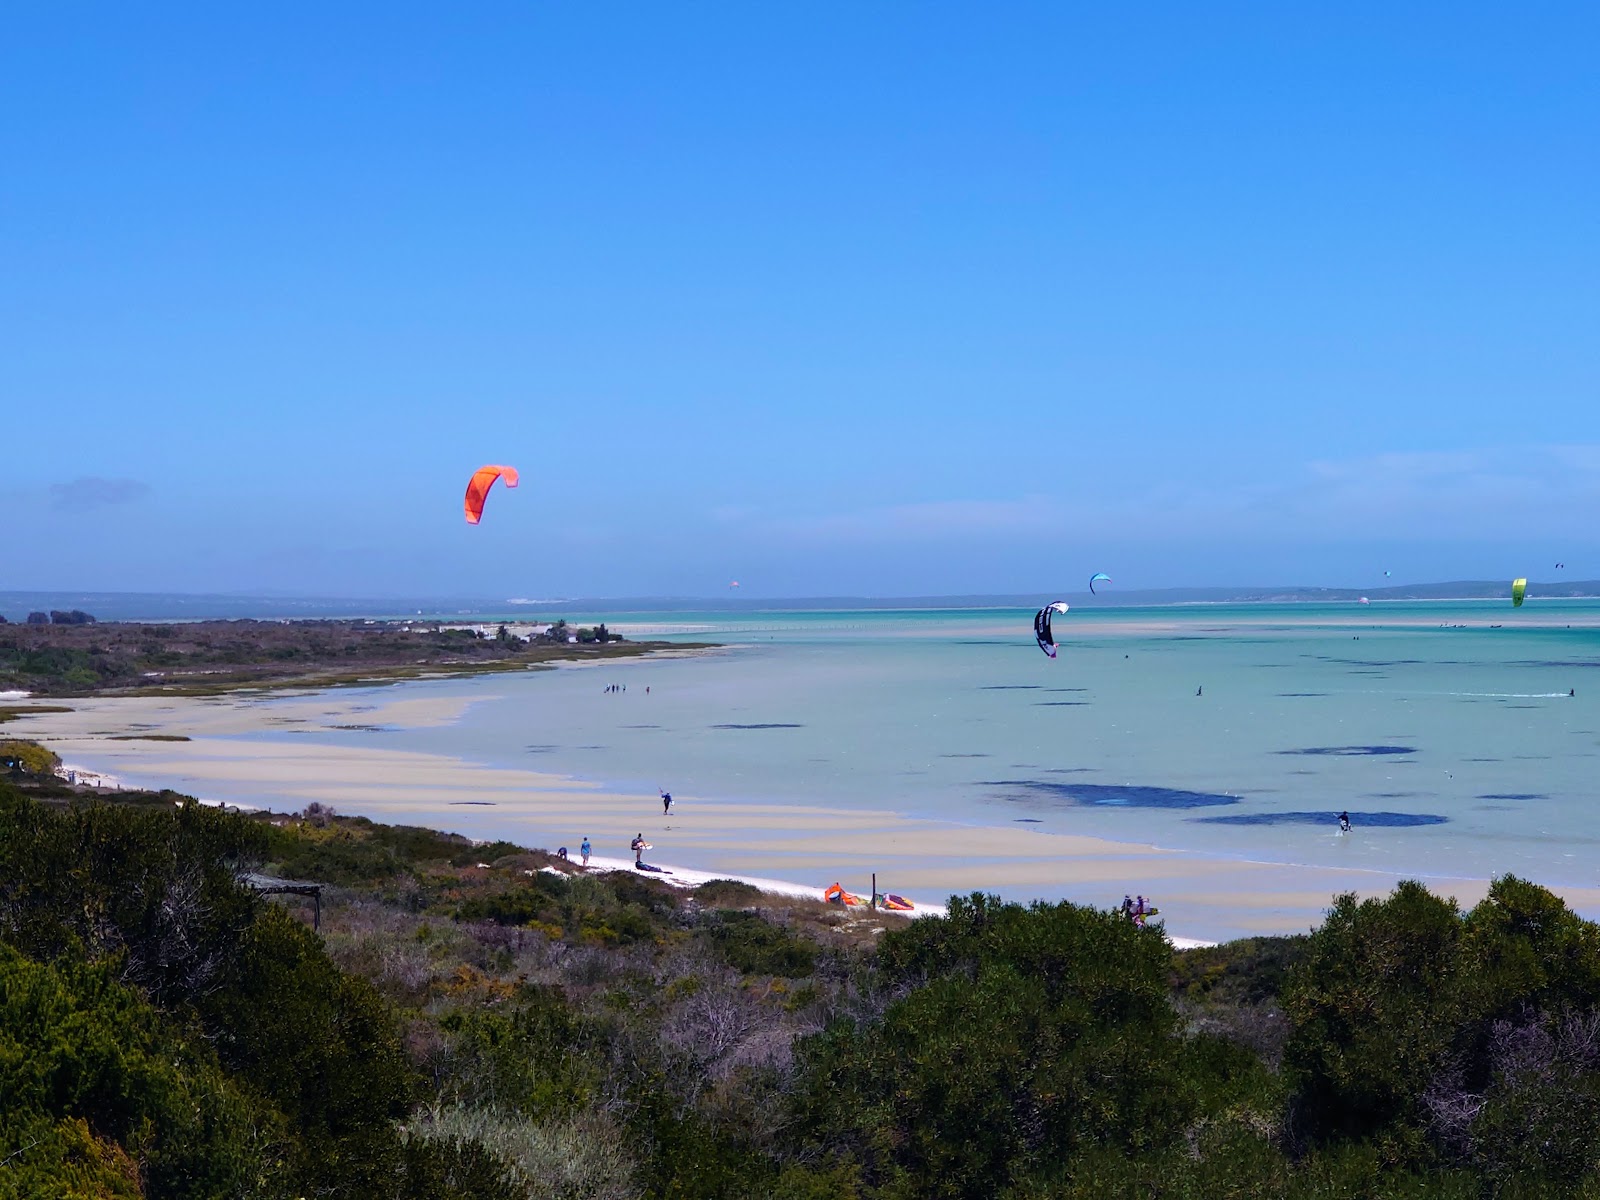 Fotografija Shark Bay beach priljubljeno mesto med poznavalci sprostitve